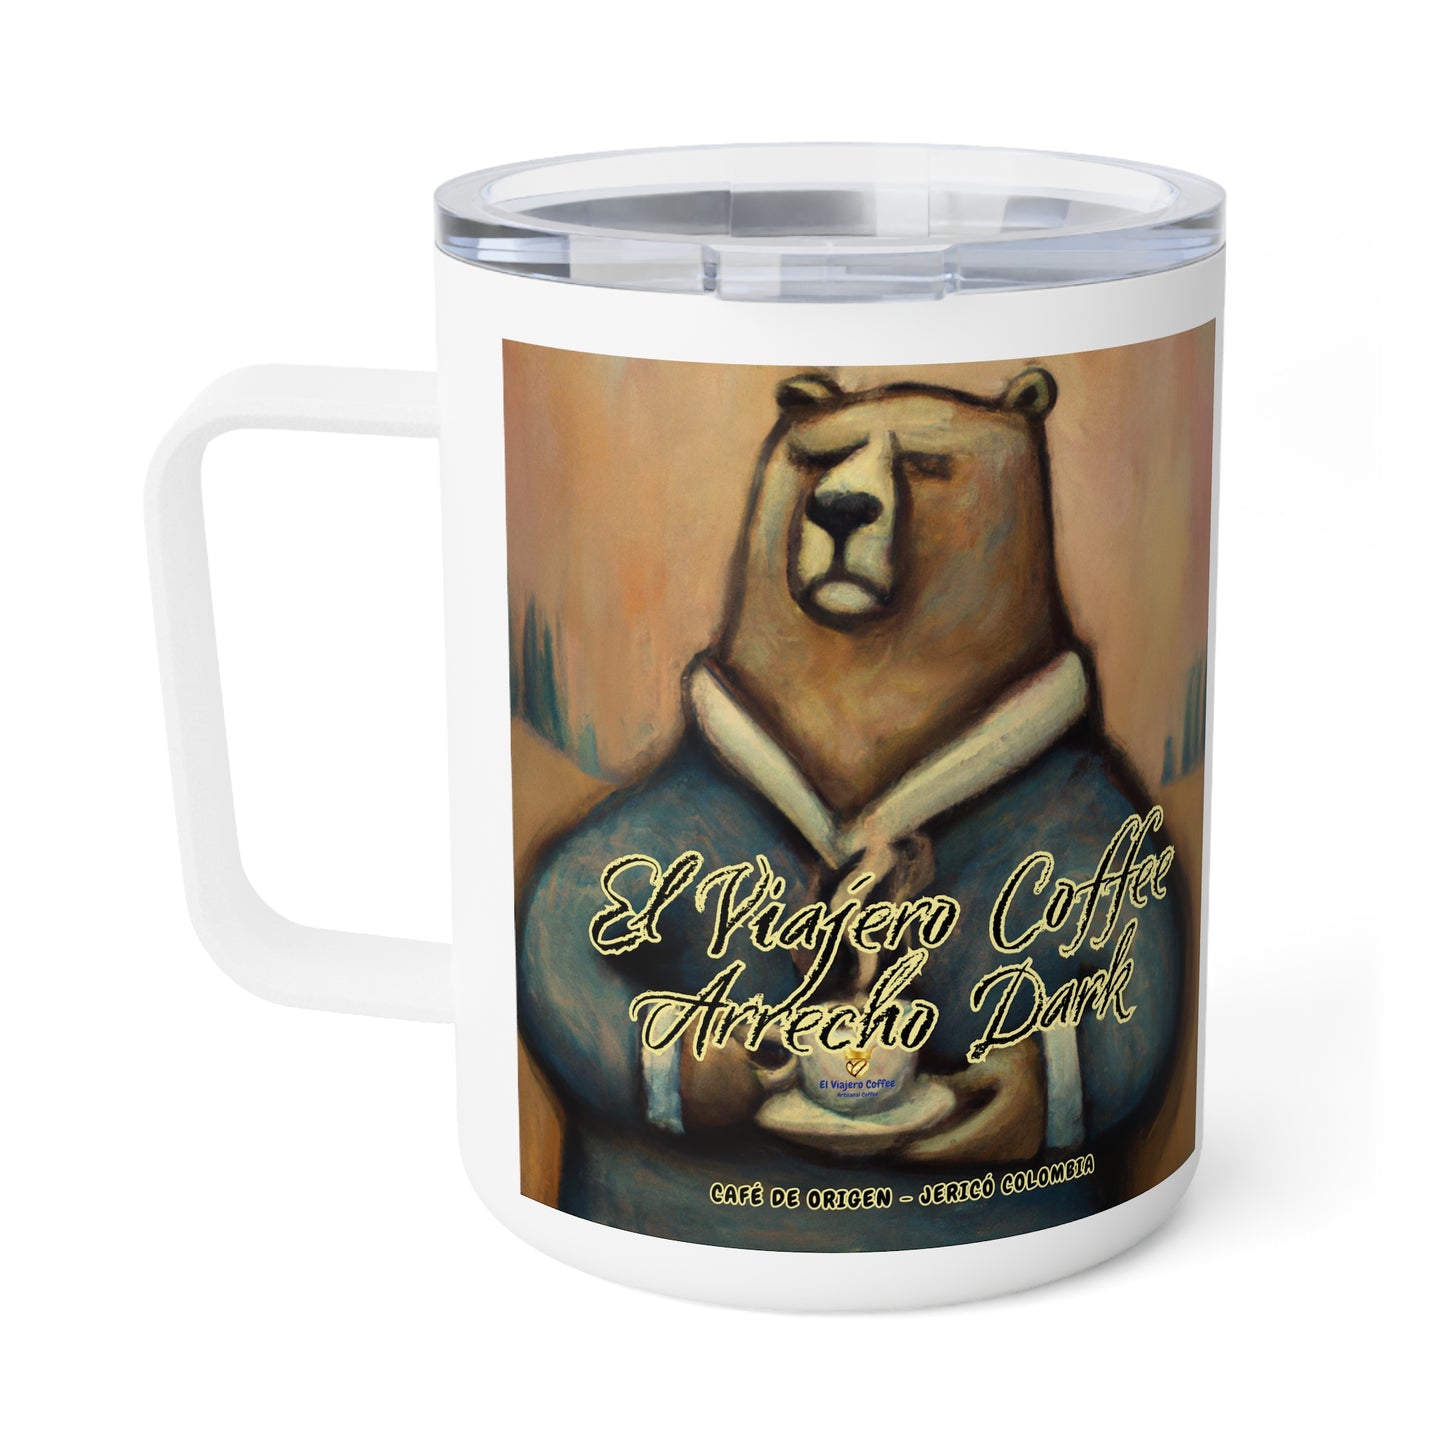 Arrecho Dark Bear - Insulated Coffee Mug, 10oz